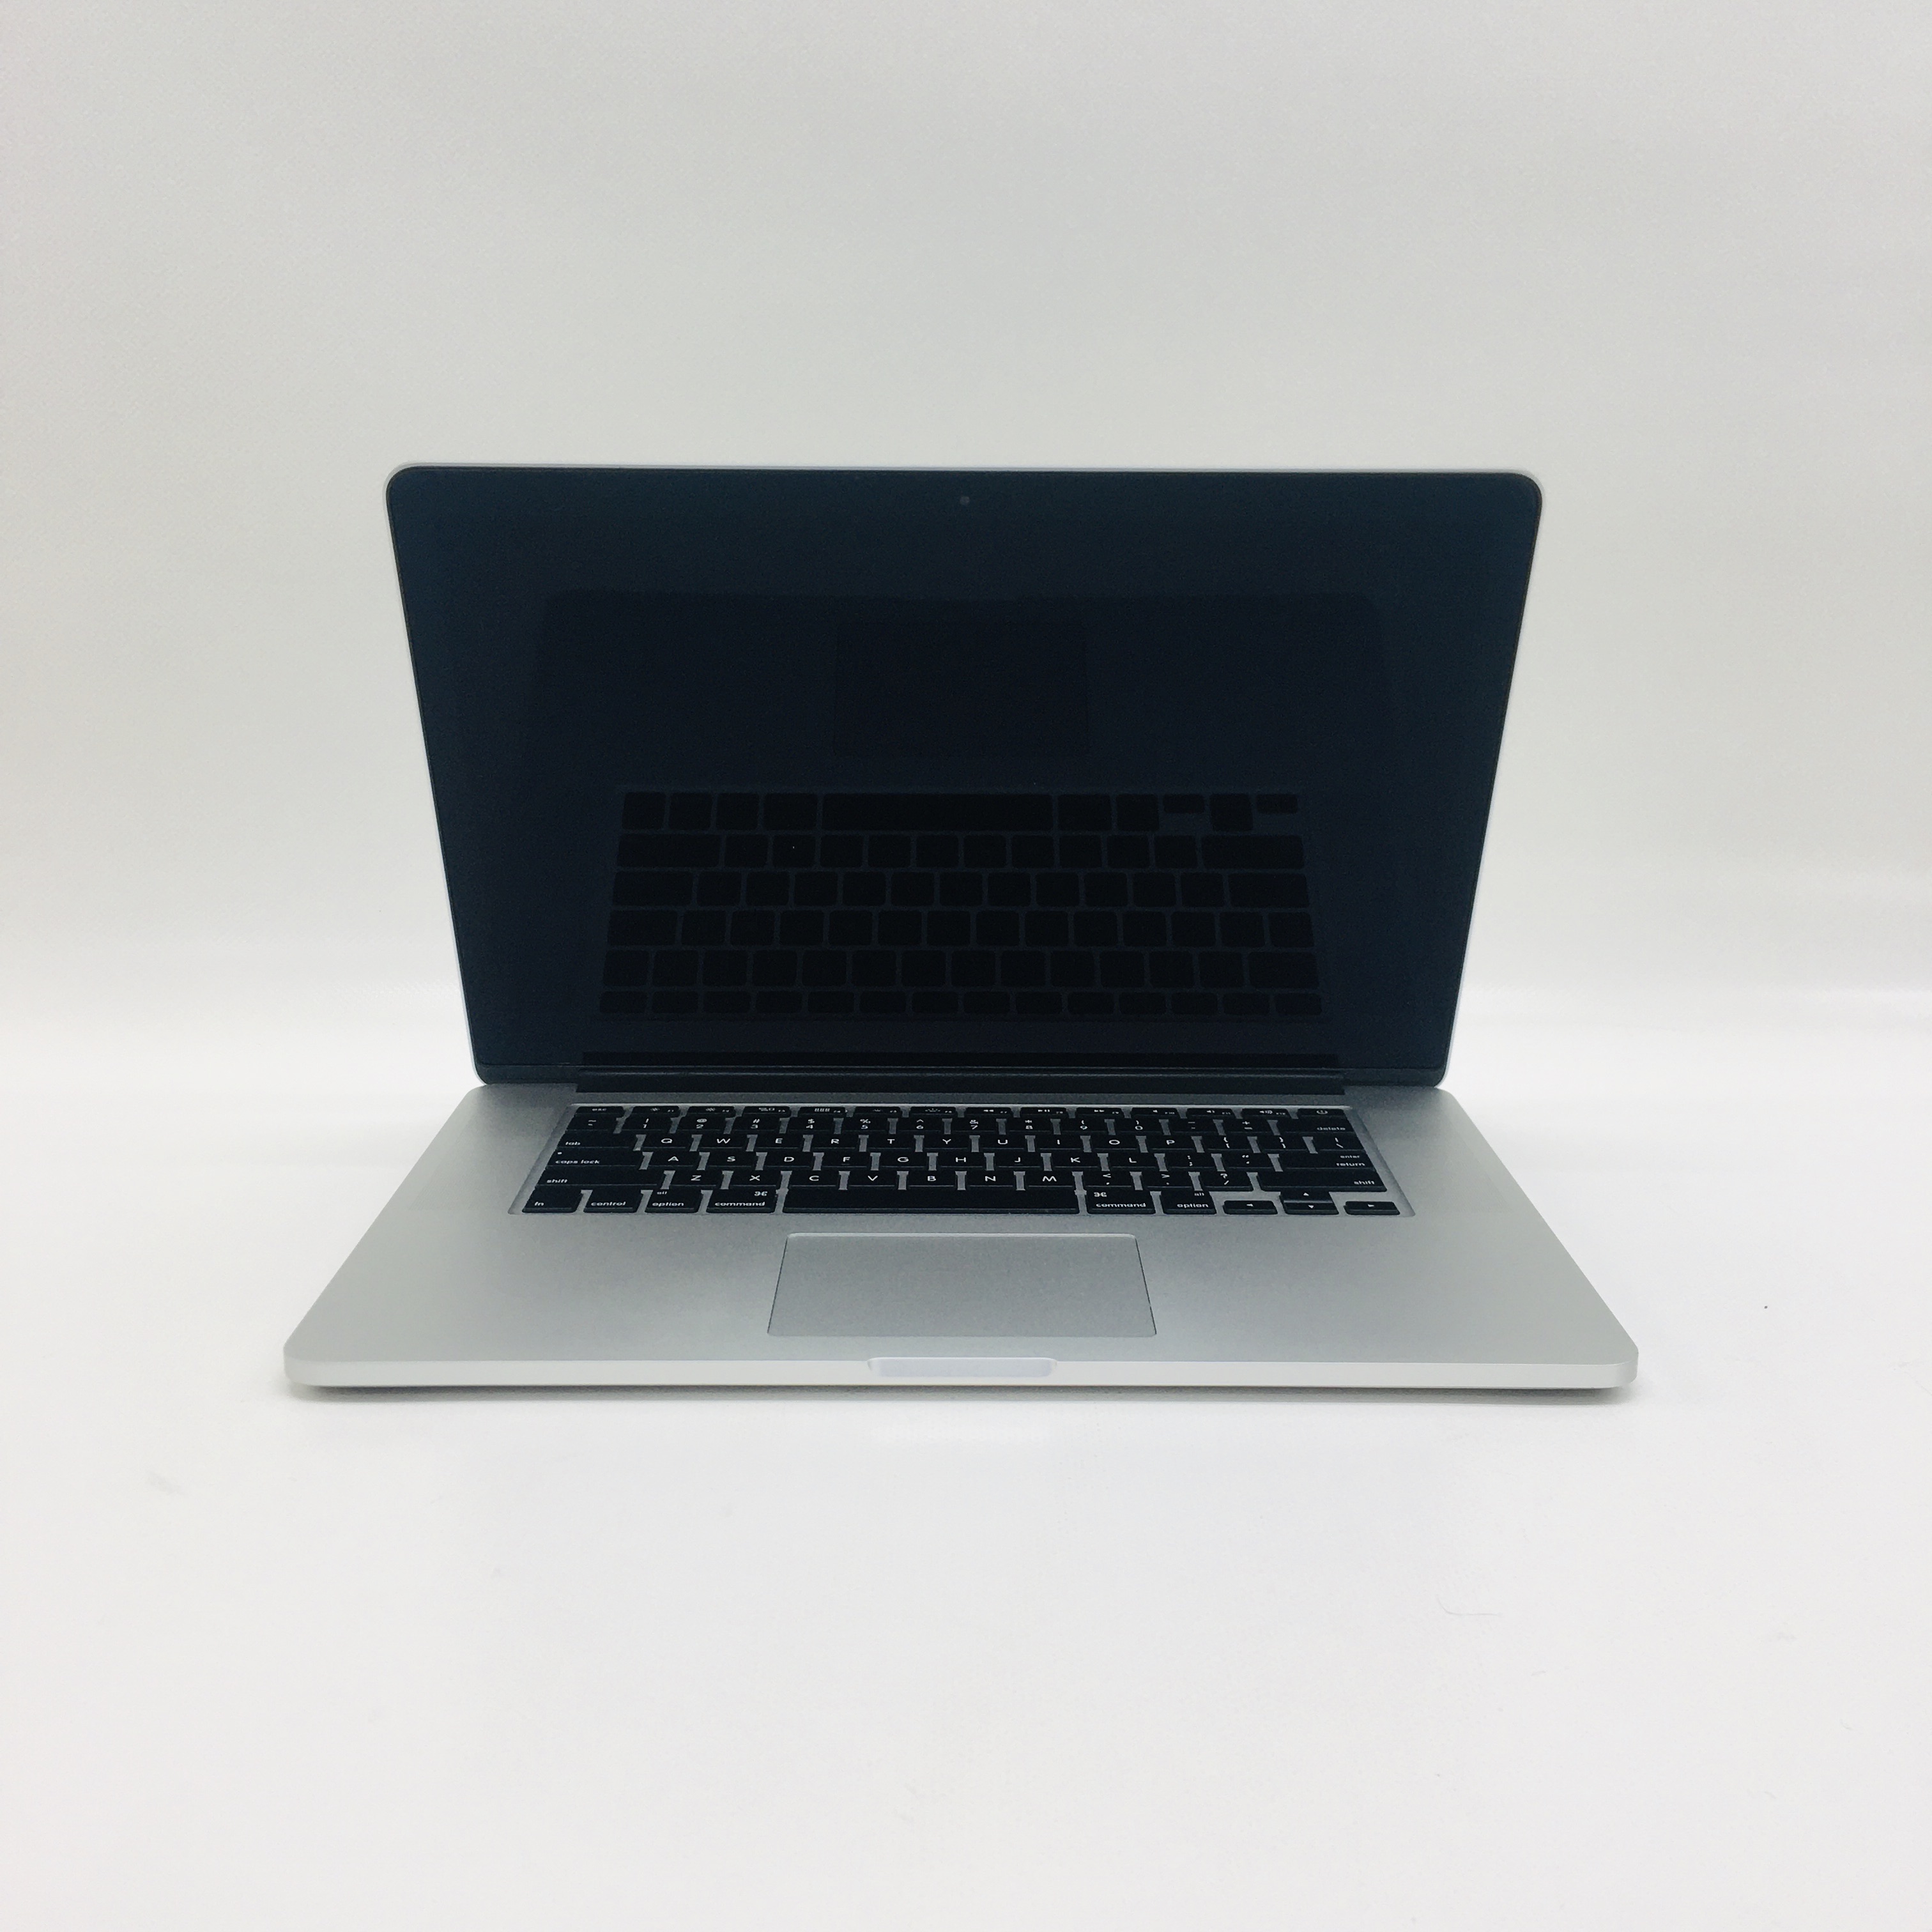 MacBook Pro Retina 15" Mid 2015 (Intel Quad-Core i7 2.2 GHz 16 GB RAM 1 TB SSD), Intel Quad-Core i7 2.2 GHz, 16 GB RAM, 1 TB SSD, image 1